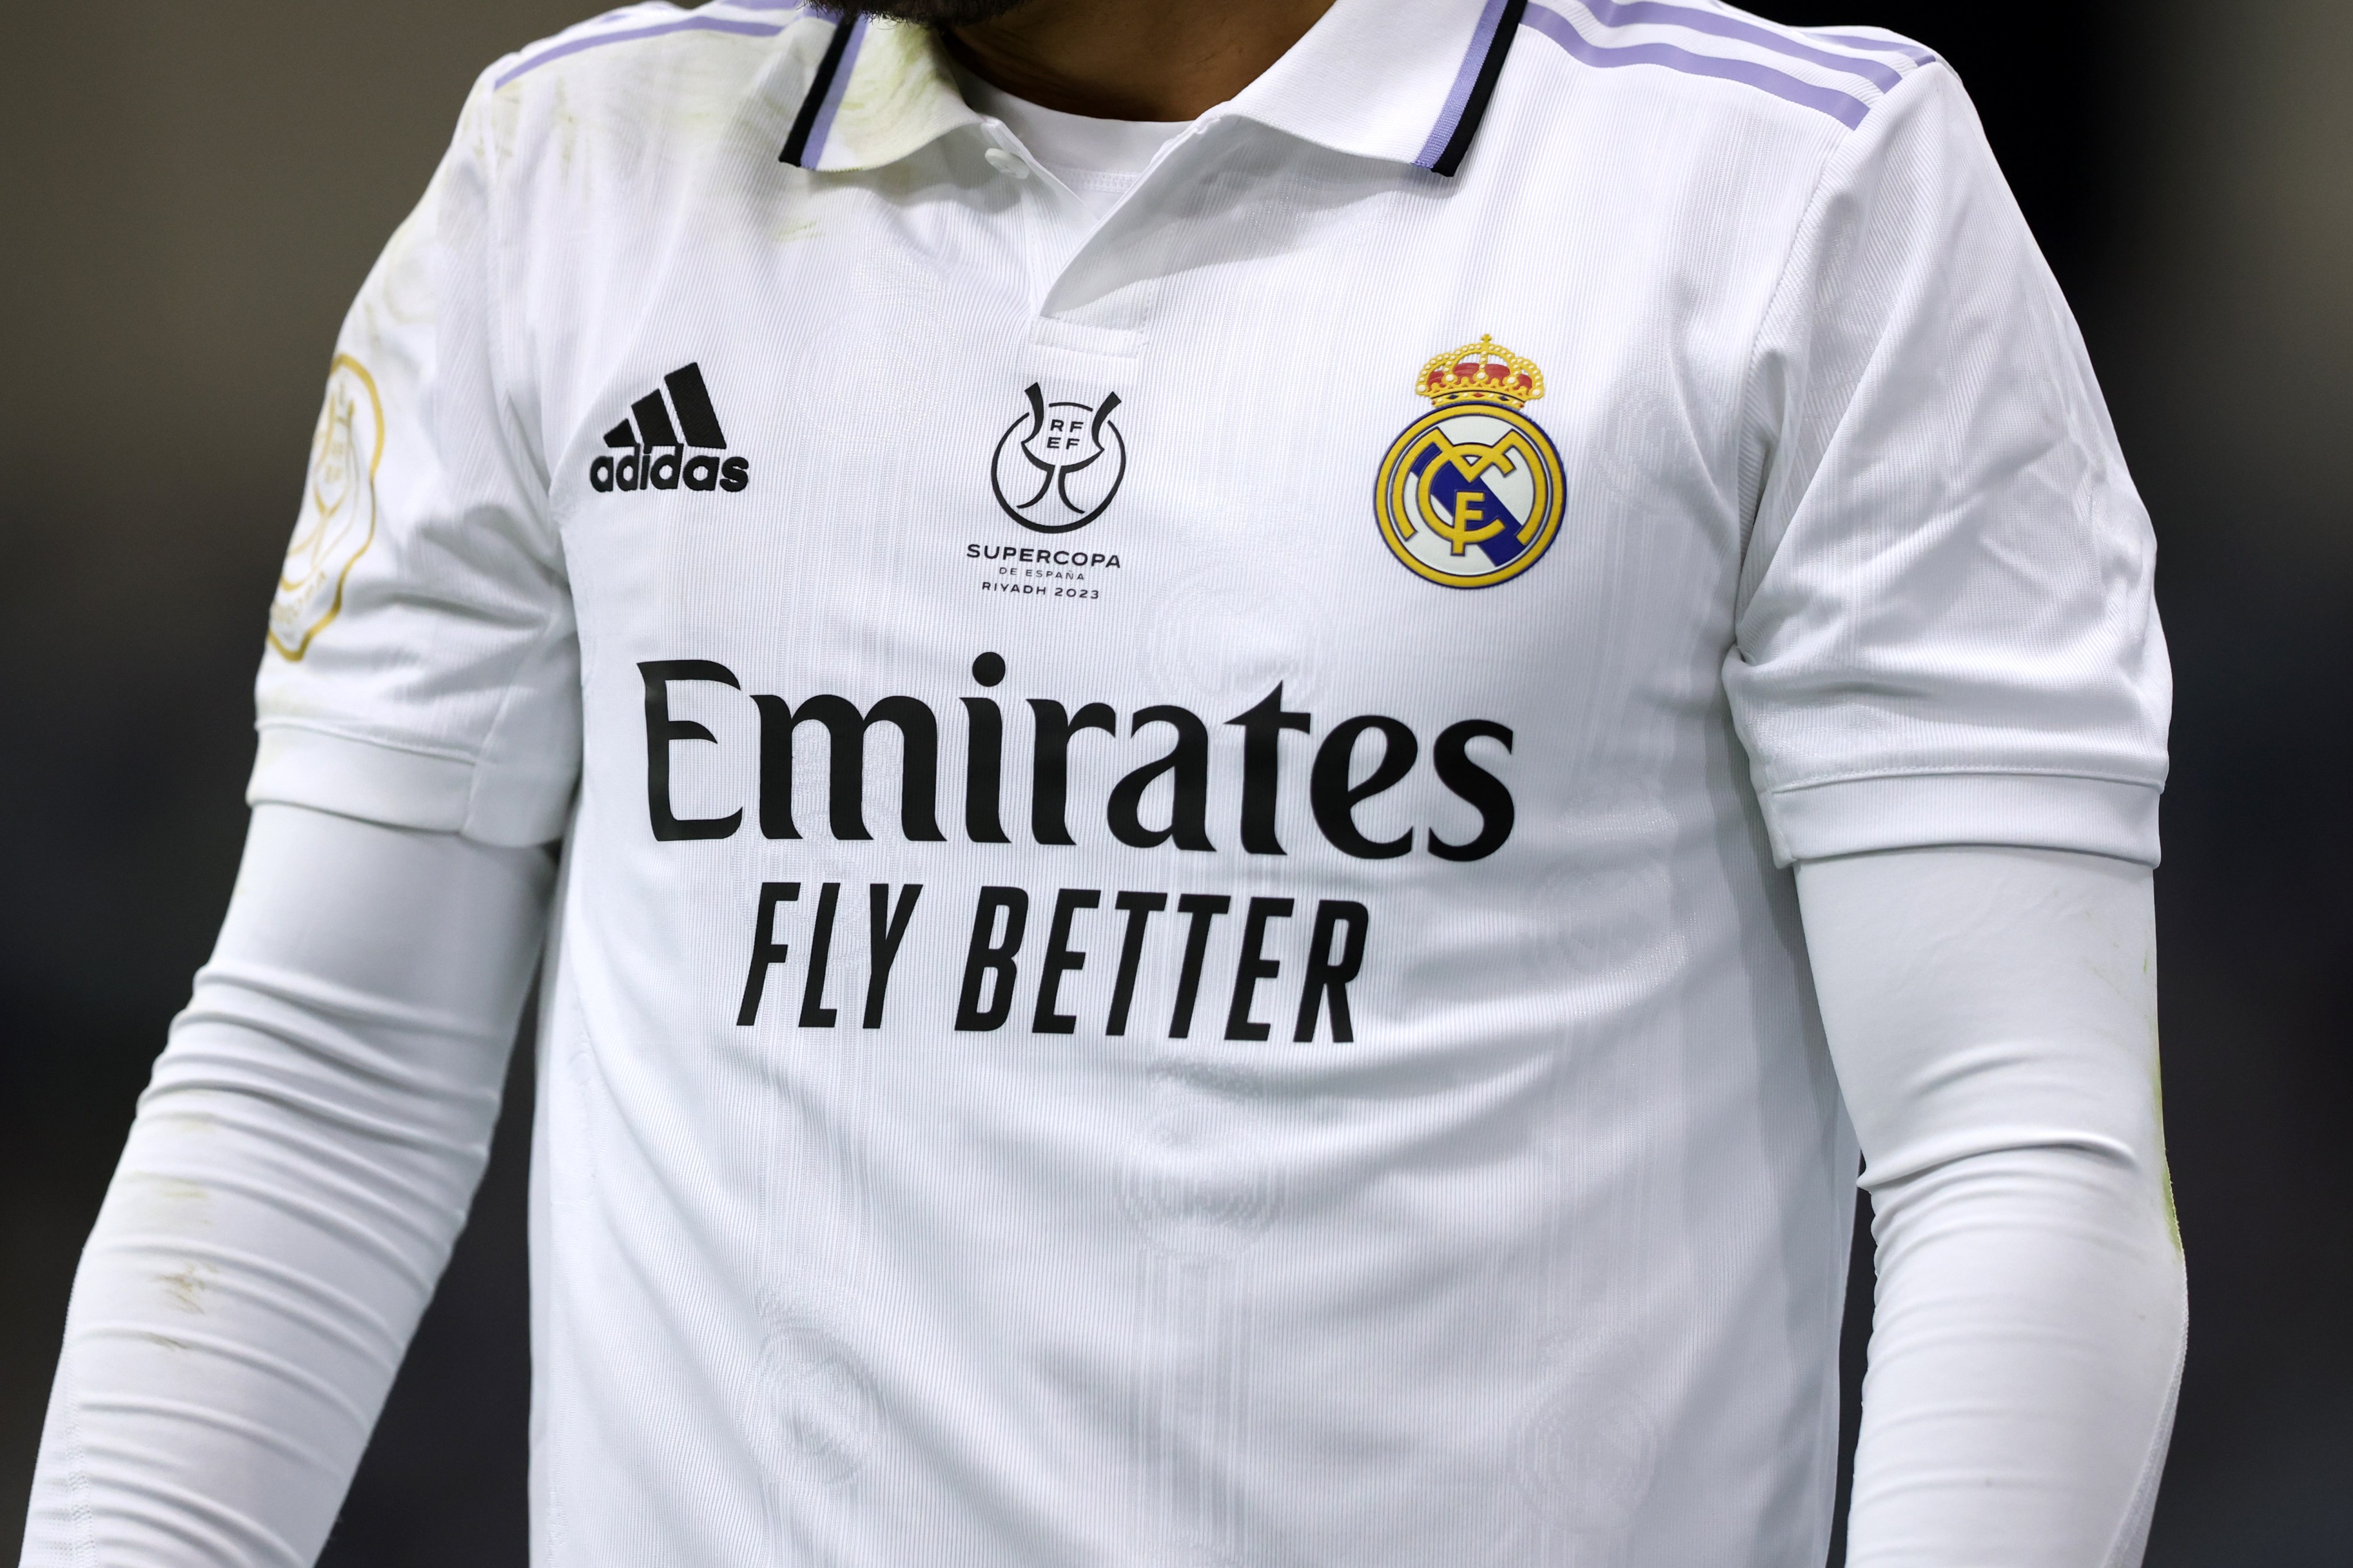 Tienda oficial del Real Madrid prohíbe estampar camisetas con el